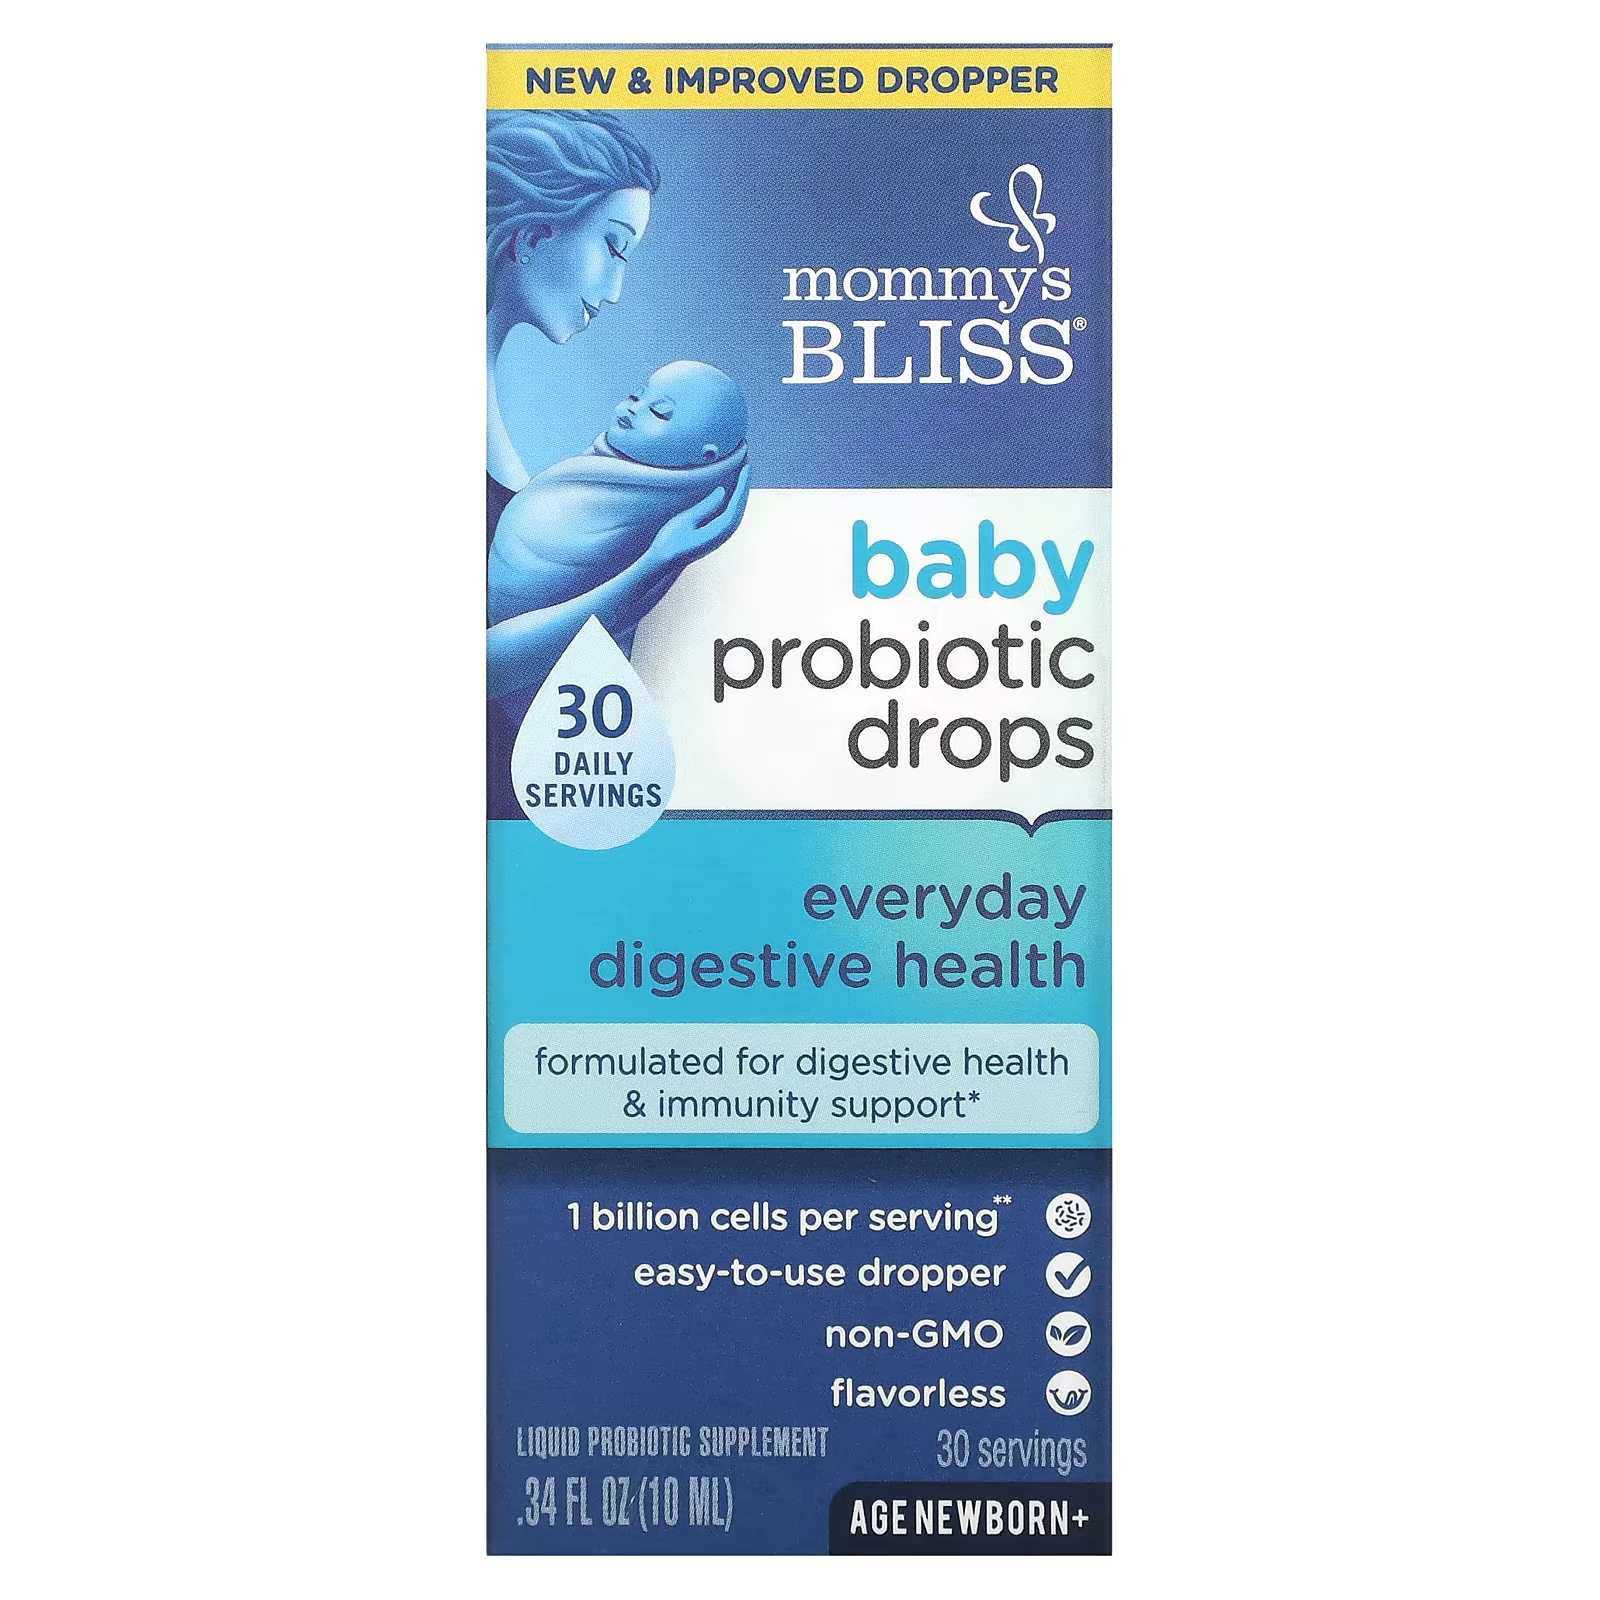 Пробиотические капли Mommy's Bliss Baby для здоровья пищеварительной системы новорожденных